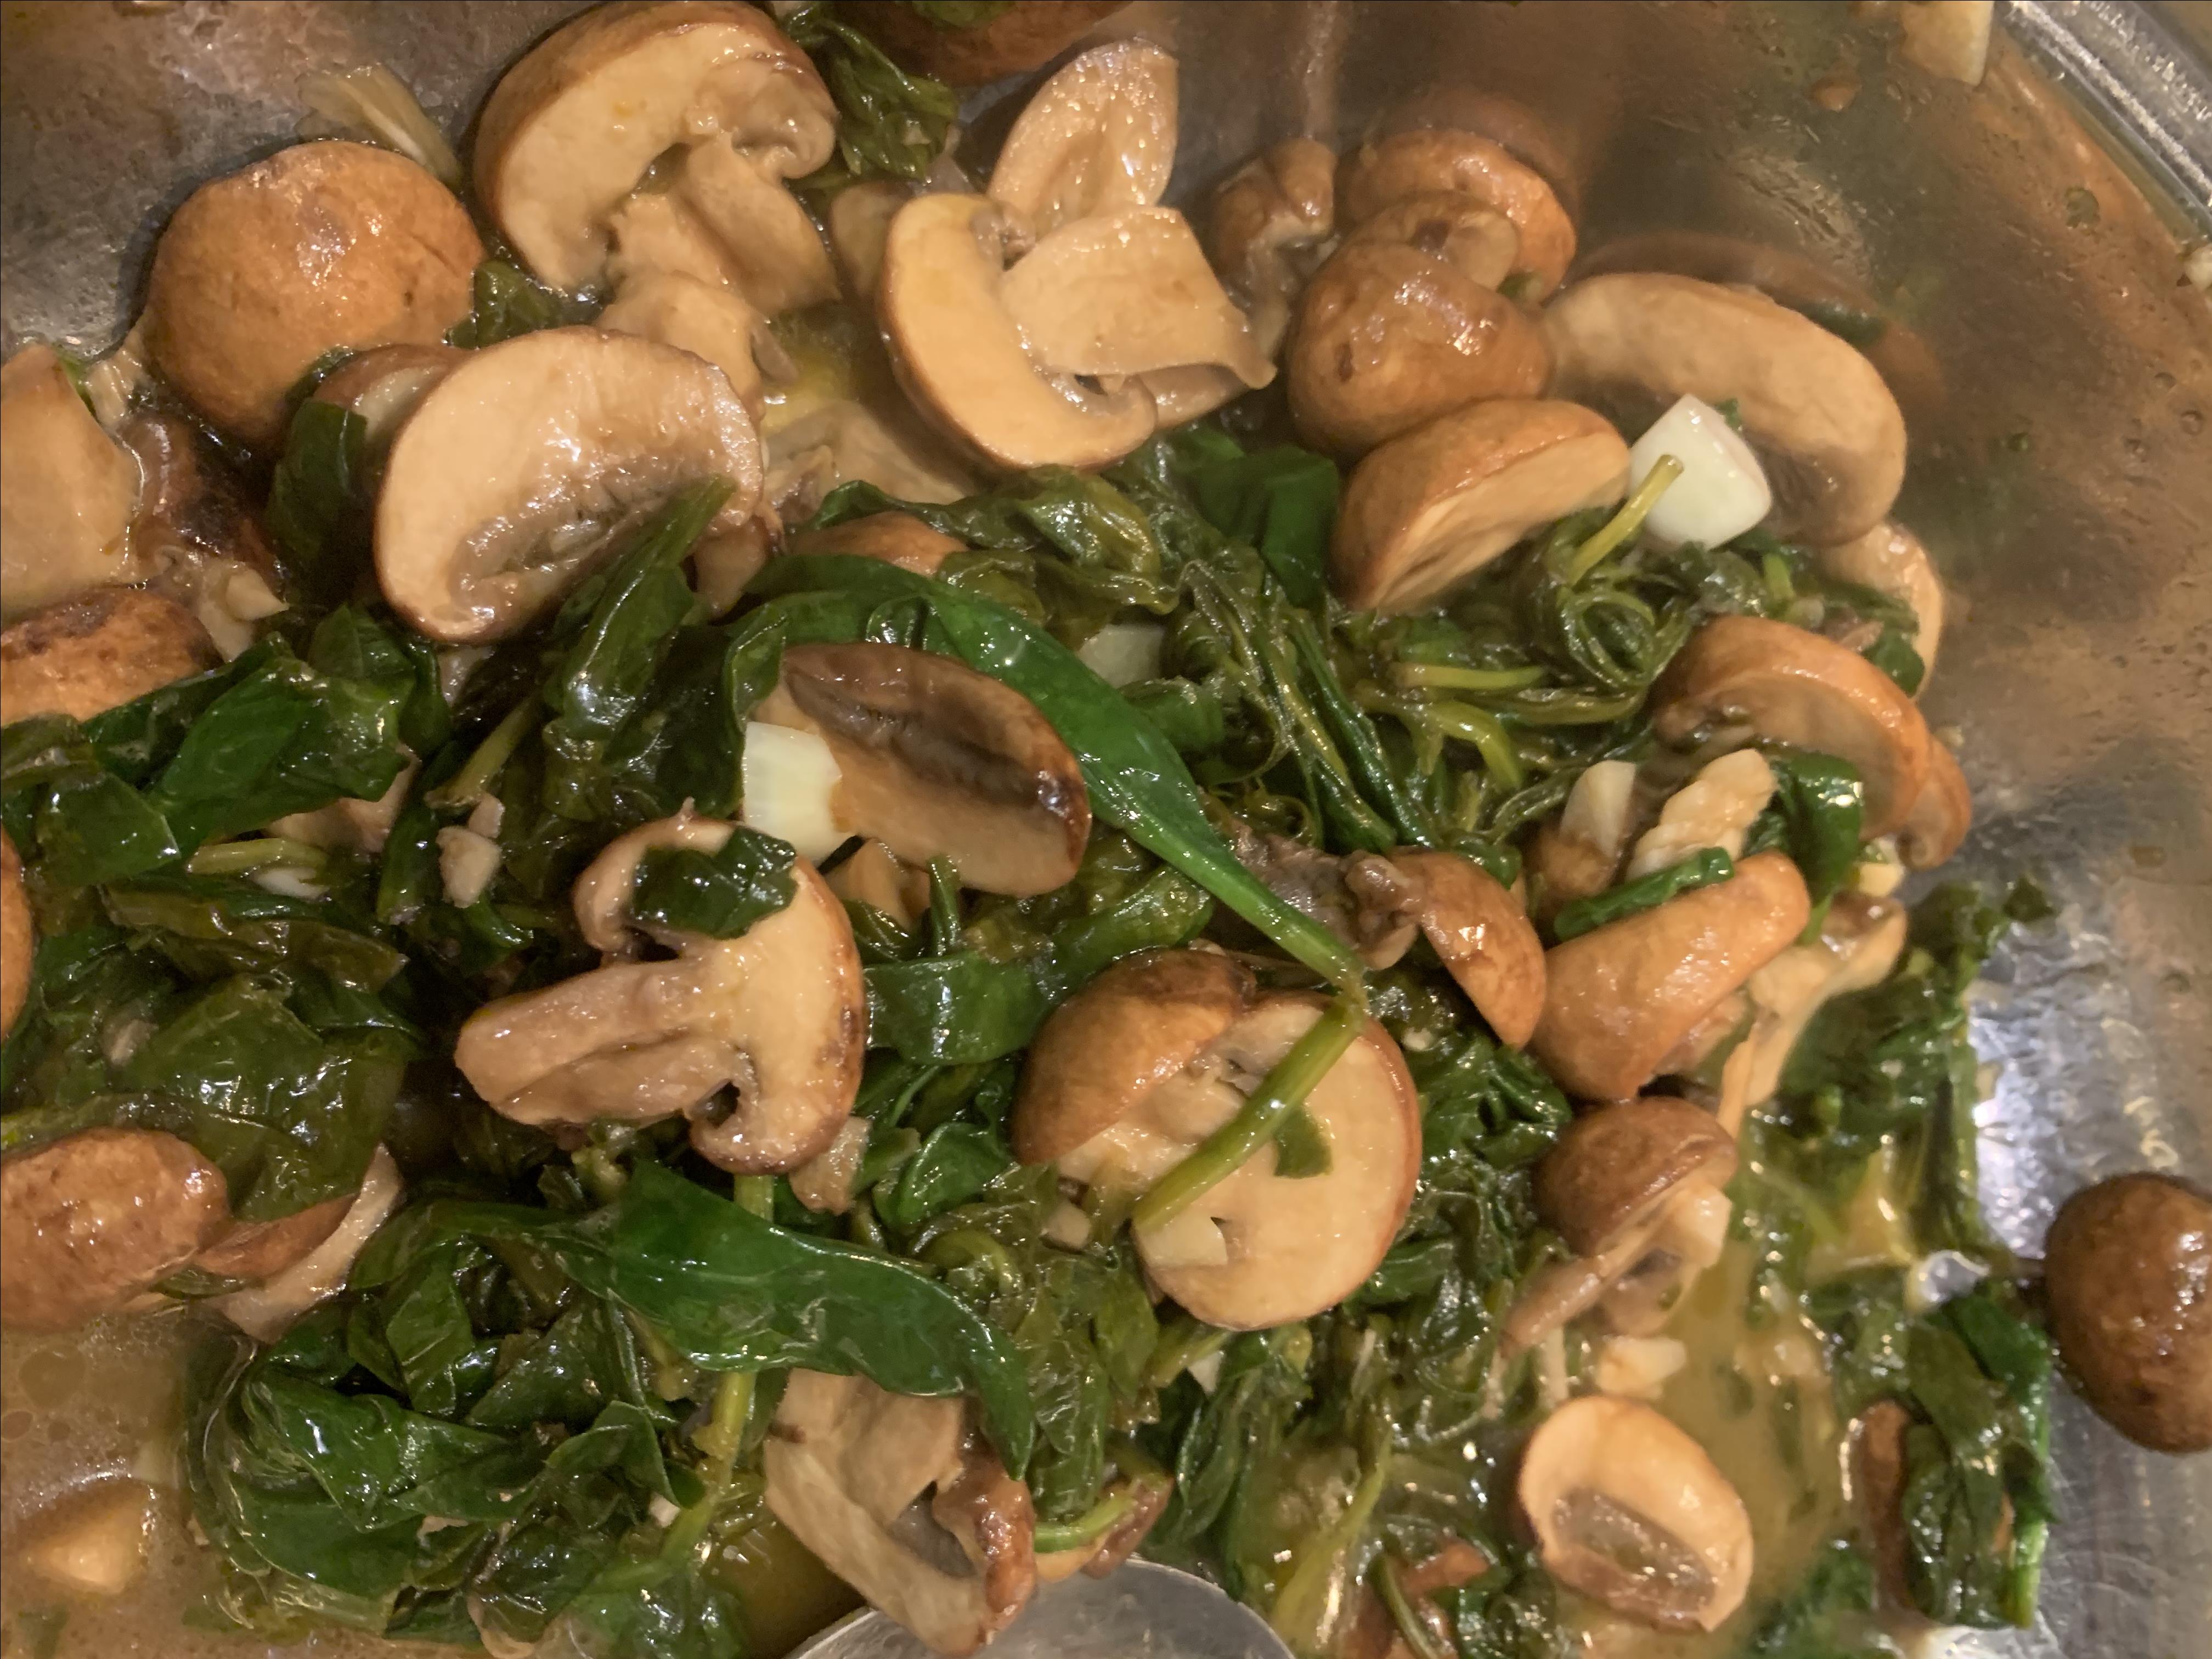 Balsamic-Garlic Spinach and Mushrooms